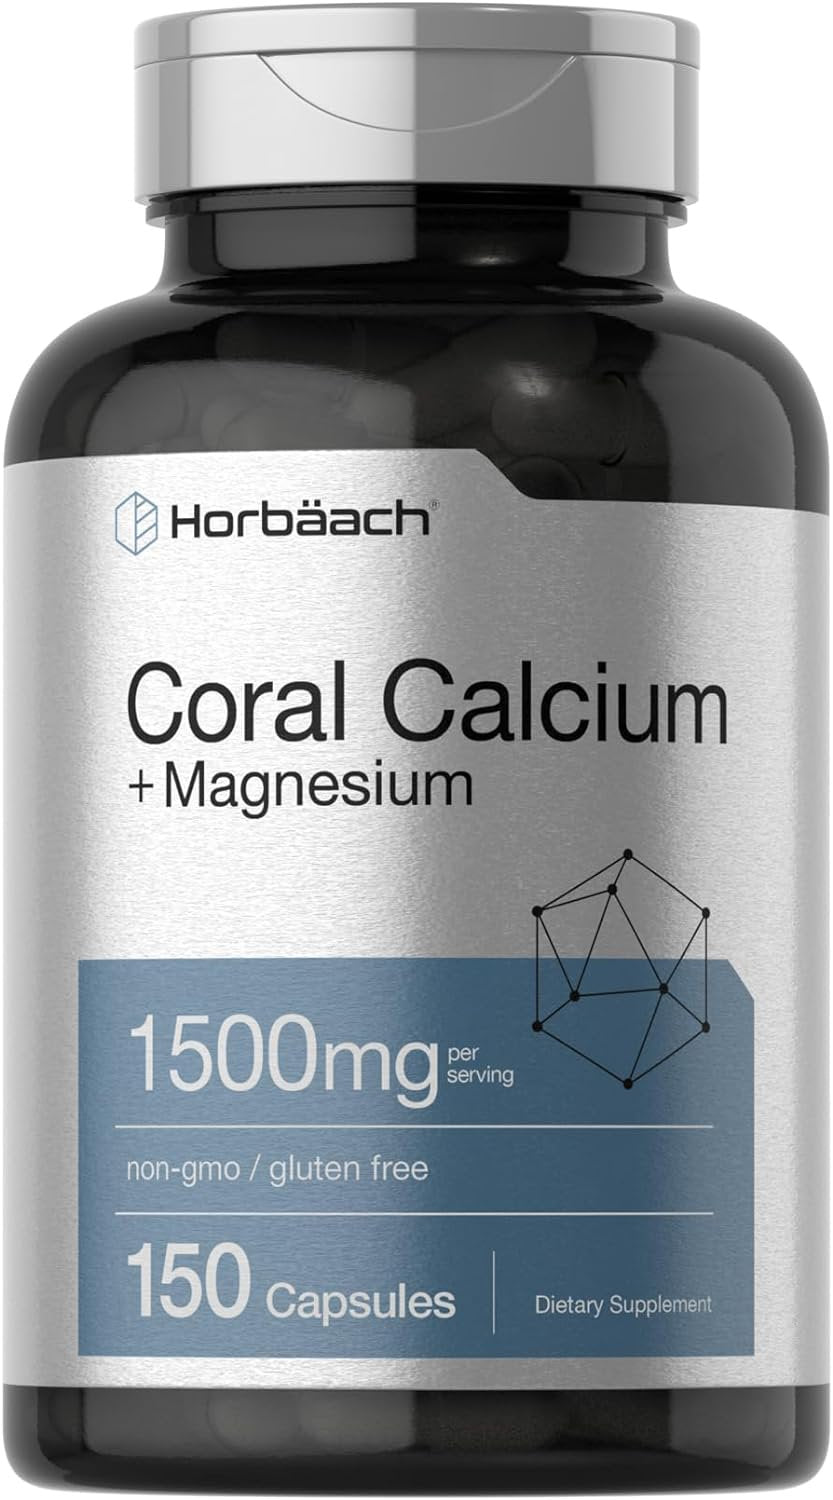 Coral Calcium 1500Mg | 200 Capsules | plus Magnesium | by Horbaach